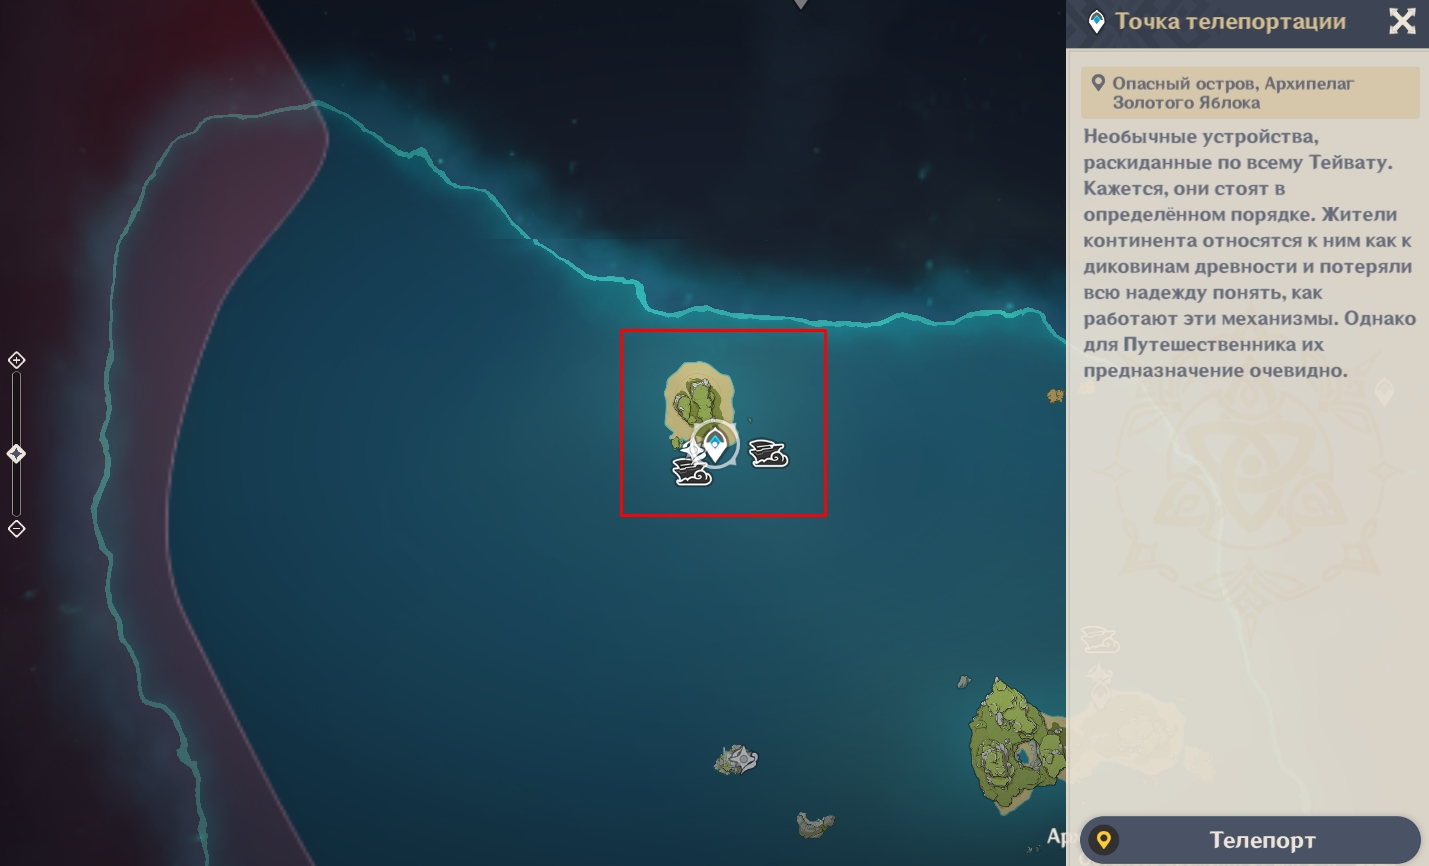 Опасный остров архипелаг золотого яблока. Карта архипелага золотого яблока. Архипелаг карта заданий. Квесты архипелага золотого яблока